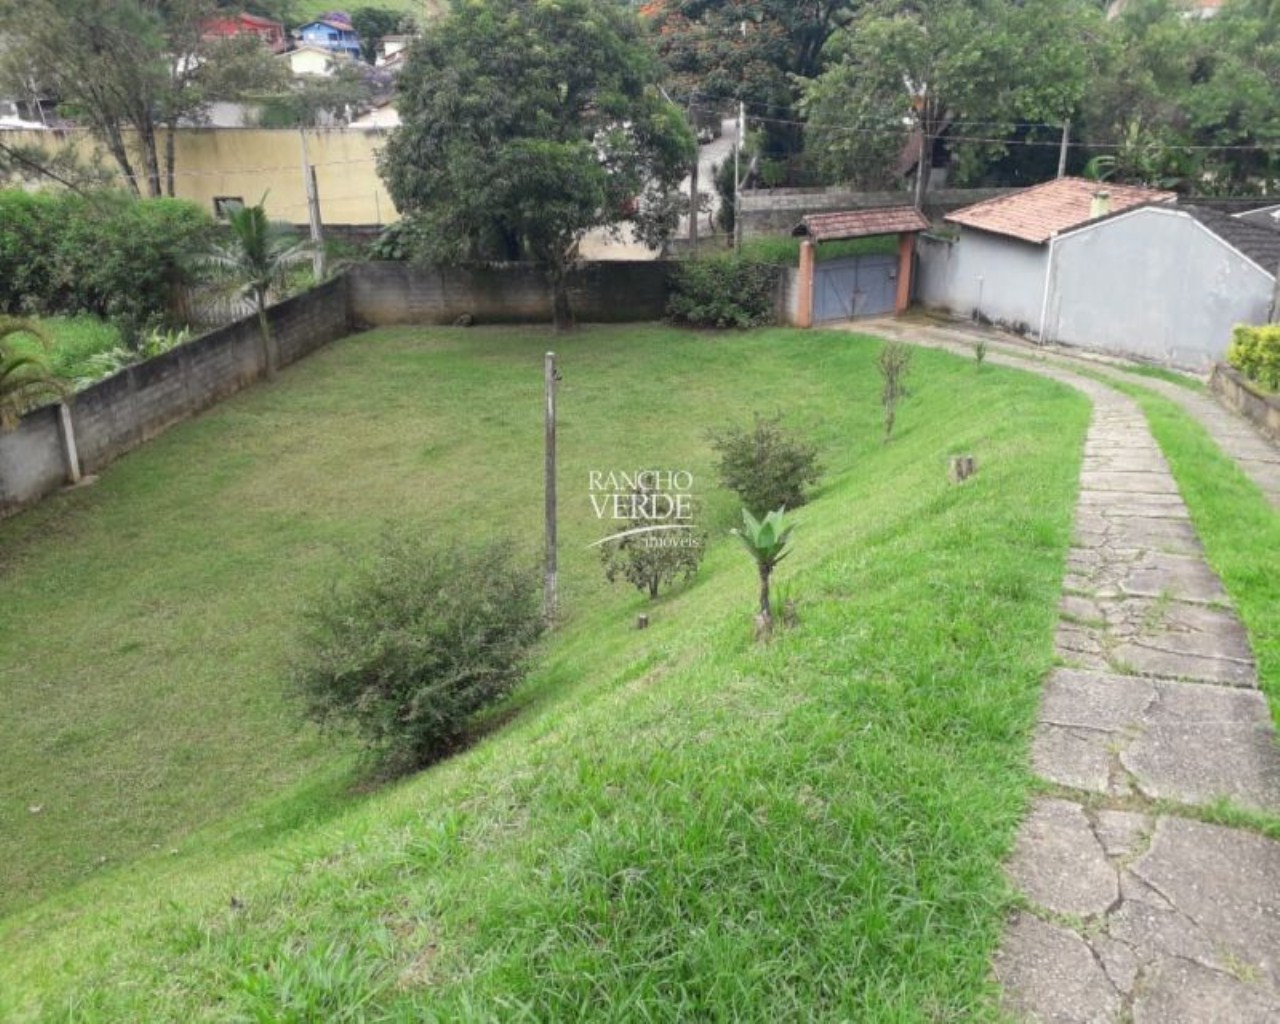 Chácara de 7.000 m² em São José dos Campos, SP